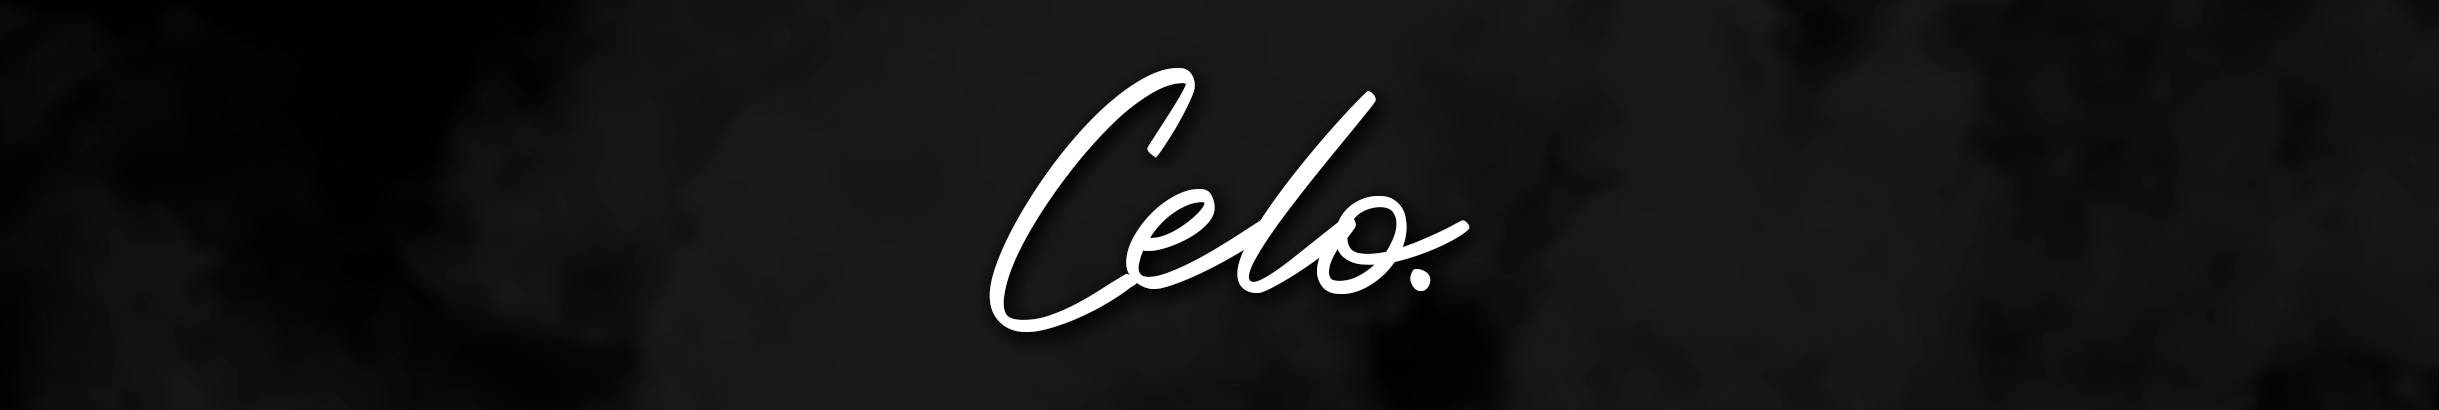 Celo Cardoso's profile banner